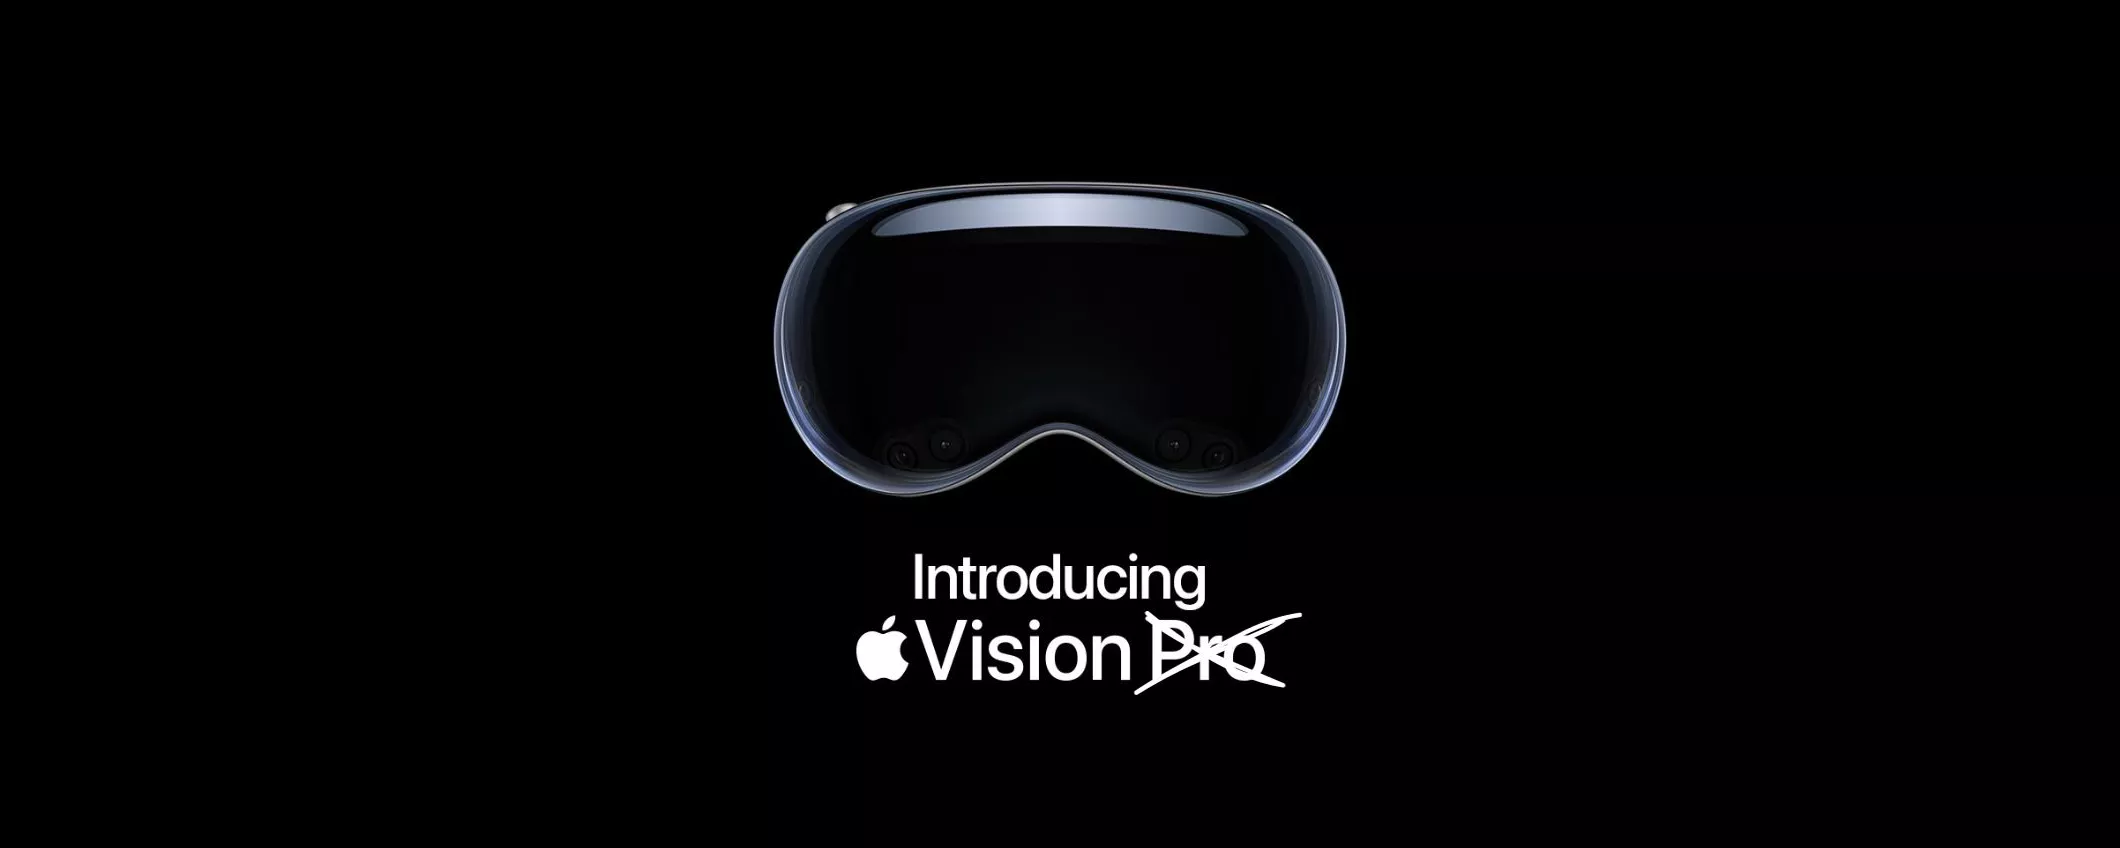 Apple Vision Pro diventa solo 